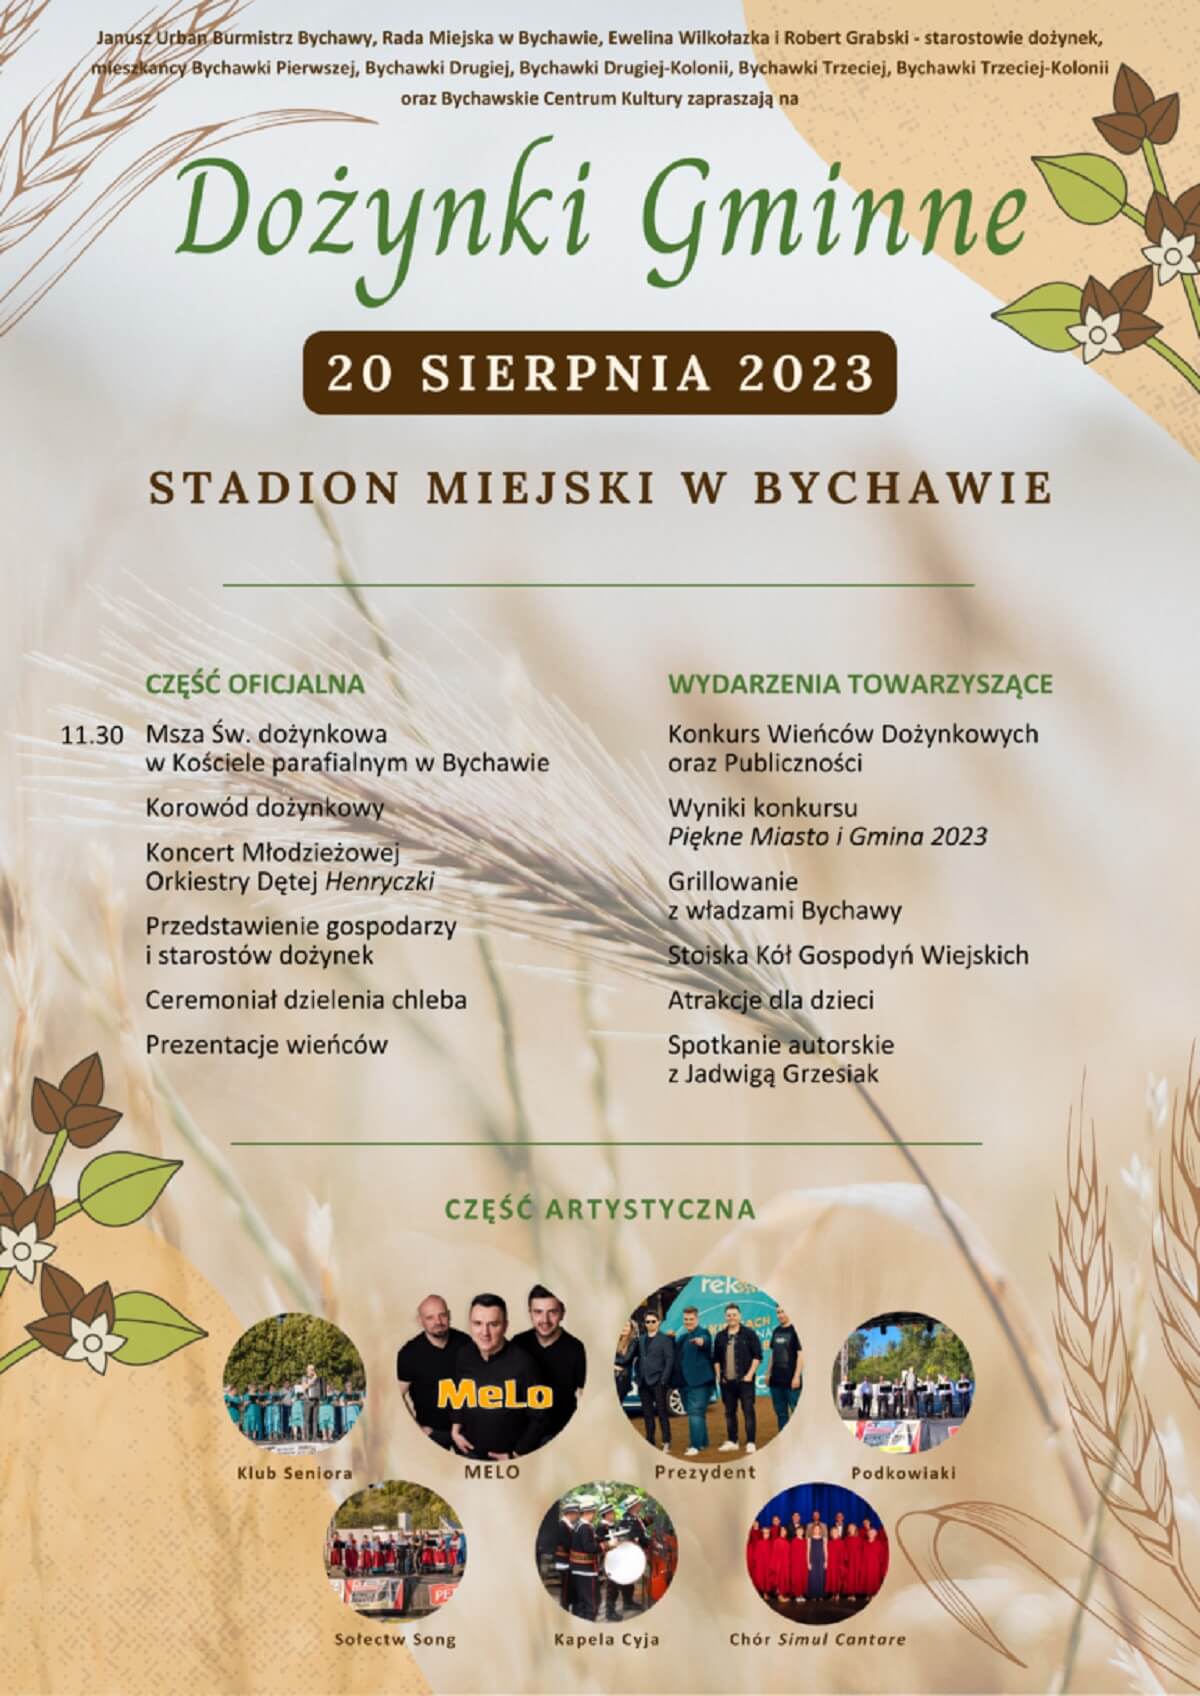 Dożynki w Bychawie 2023 - plakat, program wydarzenia